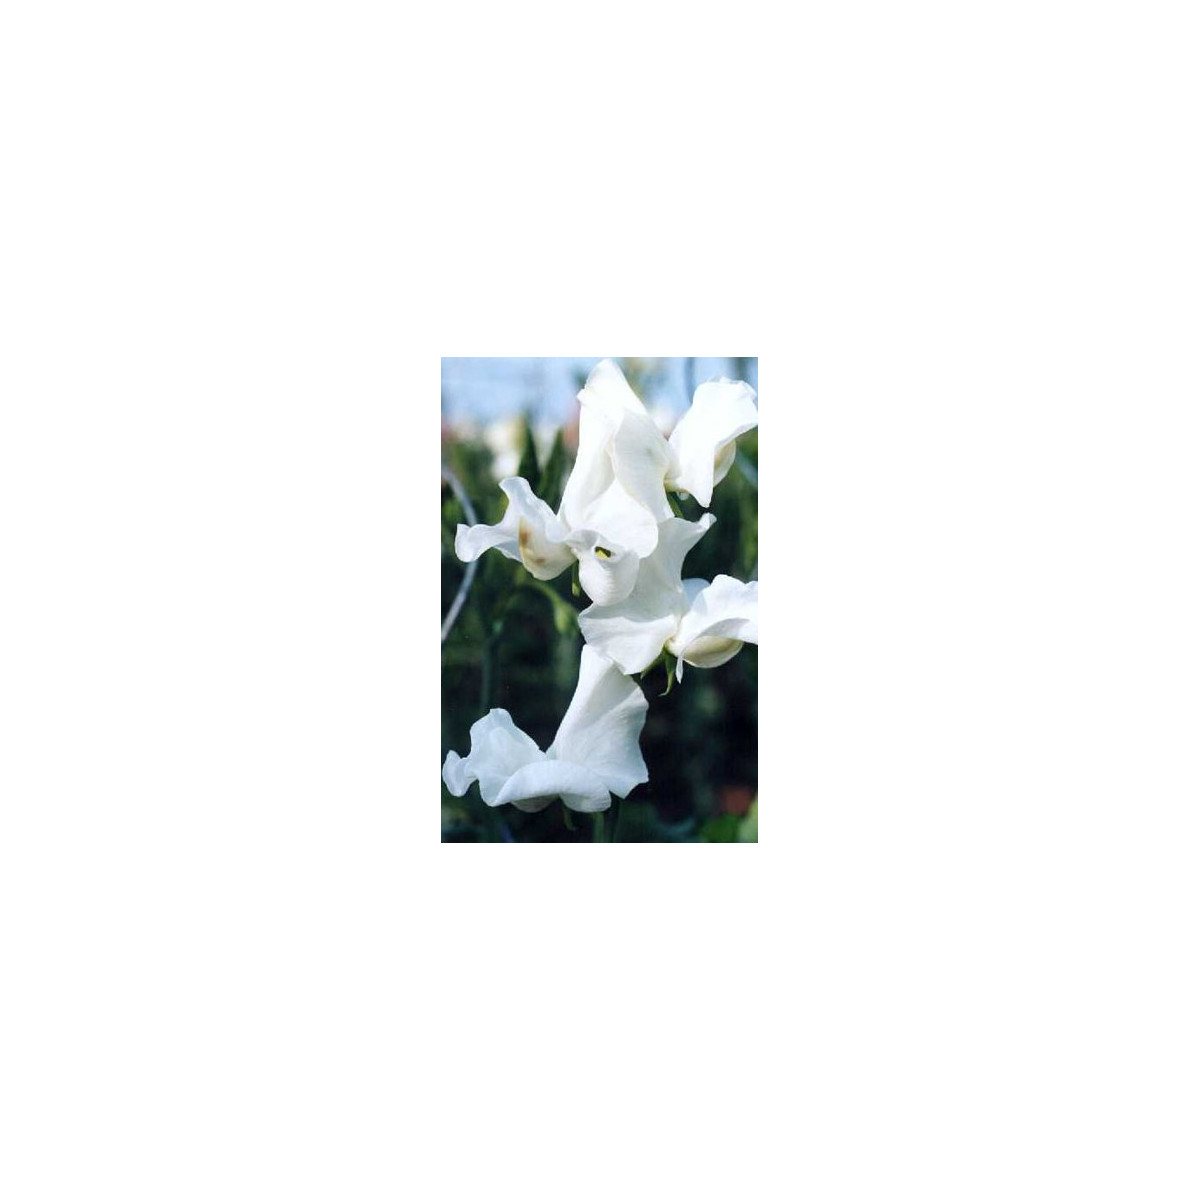 Hrachor vonný královský bílý - Lathyrus odoratus - semena hrachoru - 20 ks